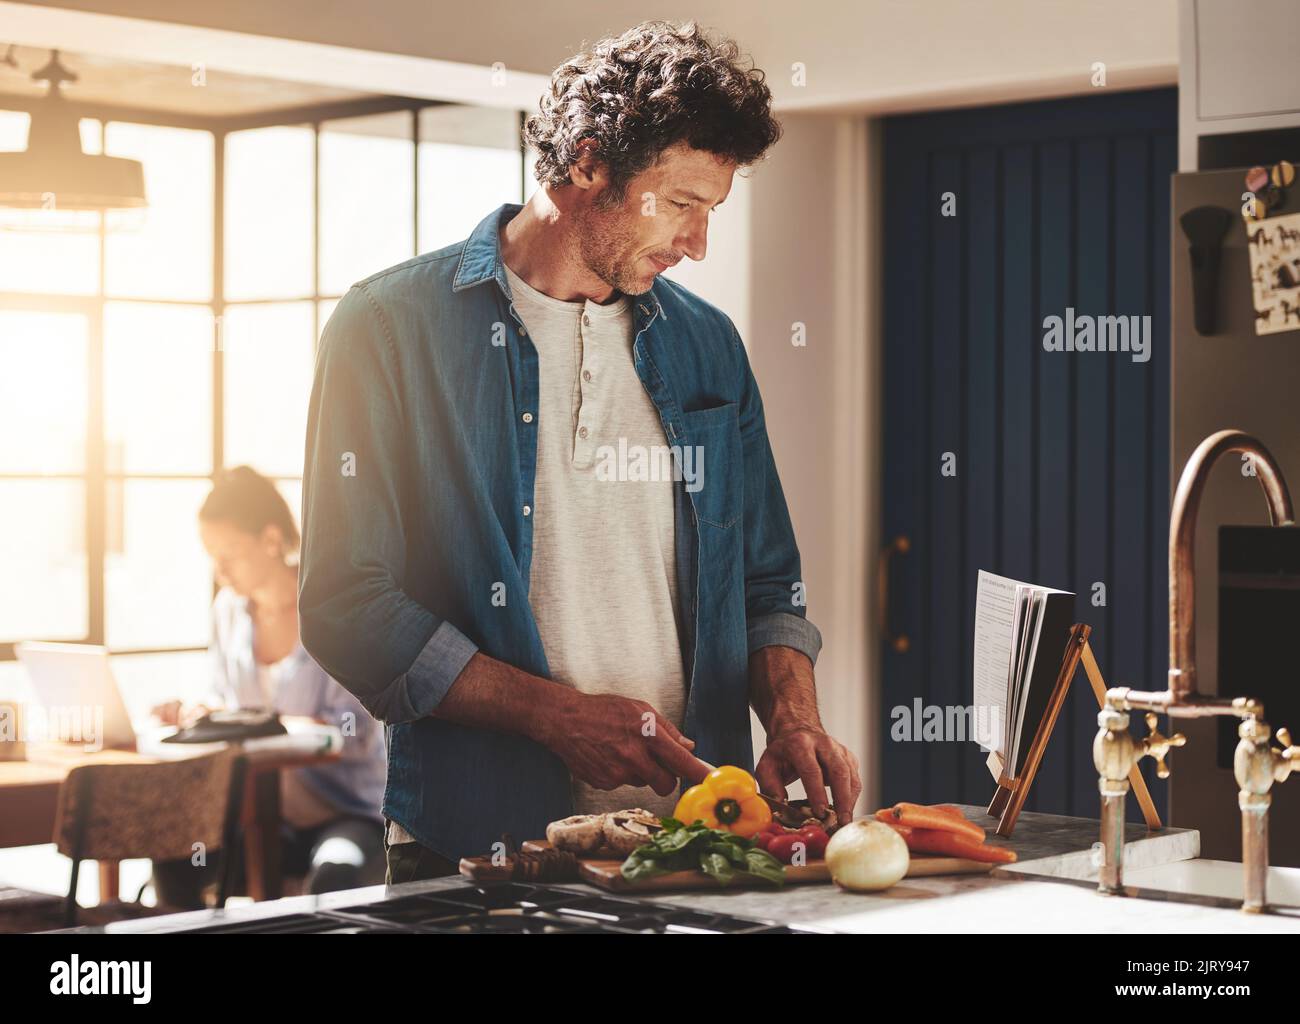 Expérimente avec une nouvelle recette. Un homme lisant une recette tout en hacher des légumes dans sa cuisine. Banque D'Images